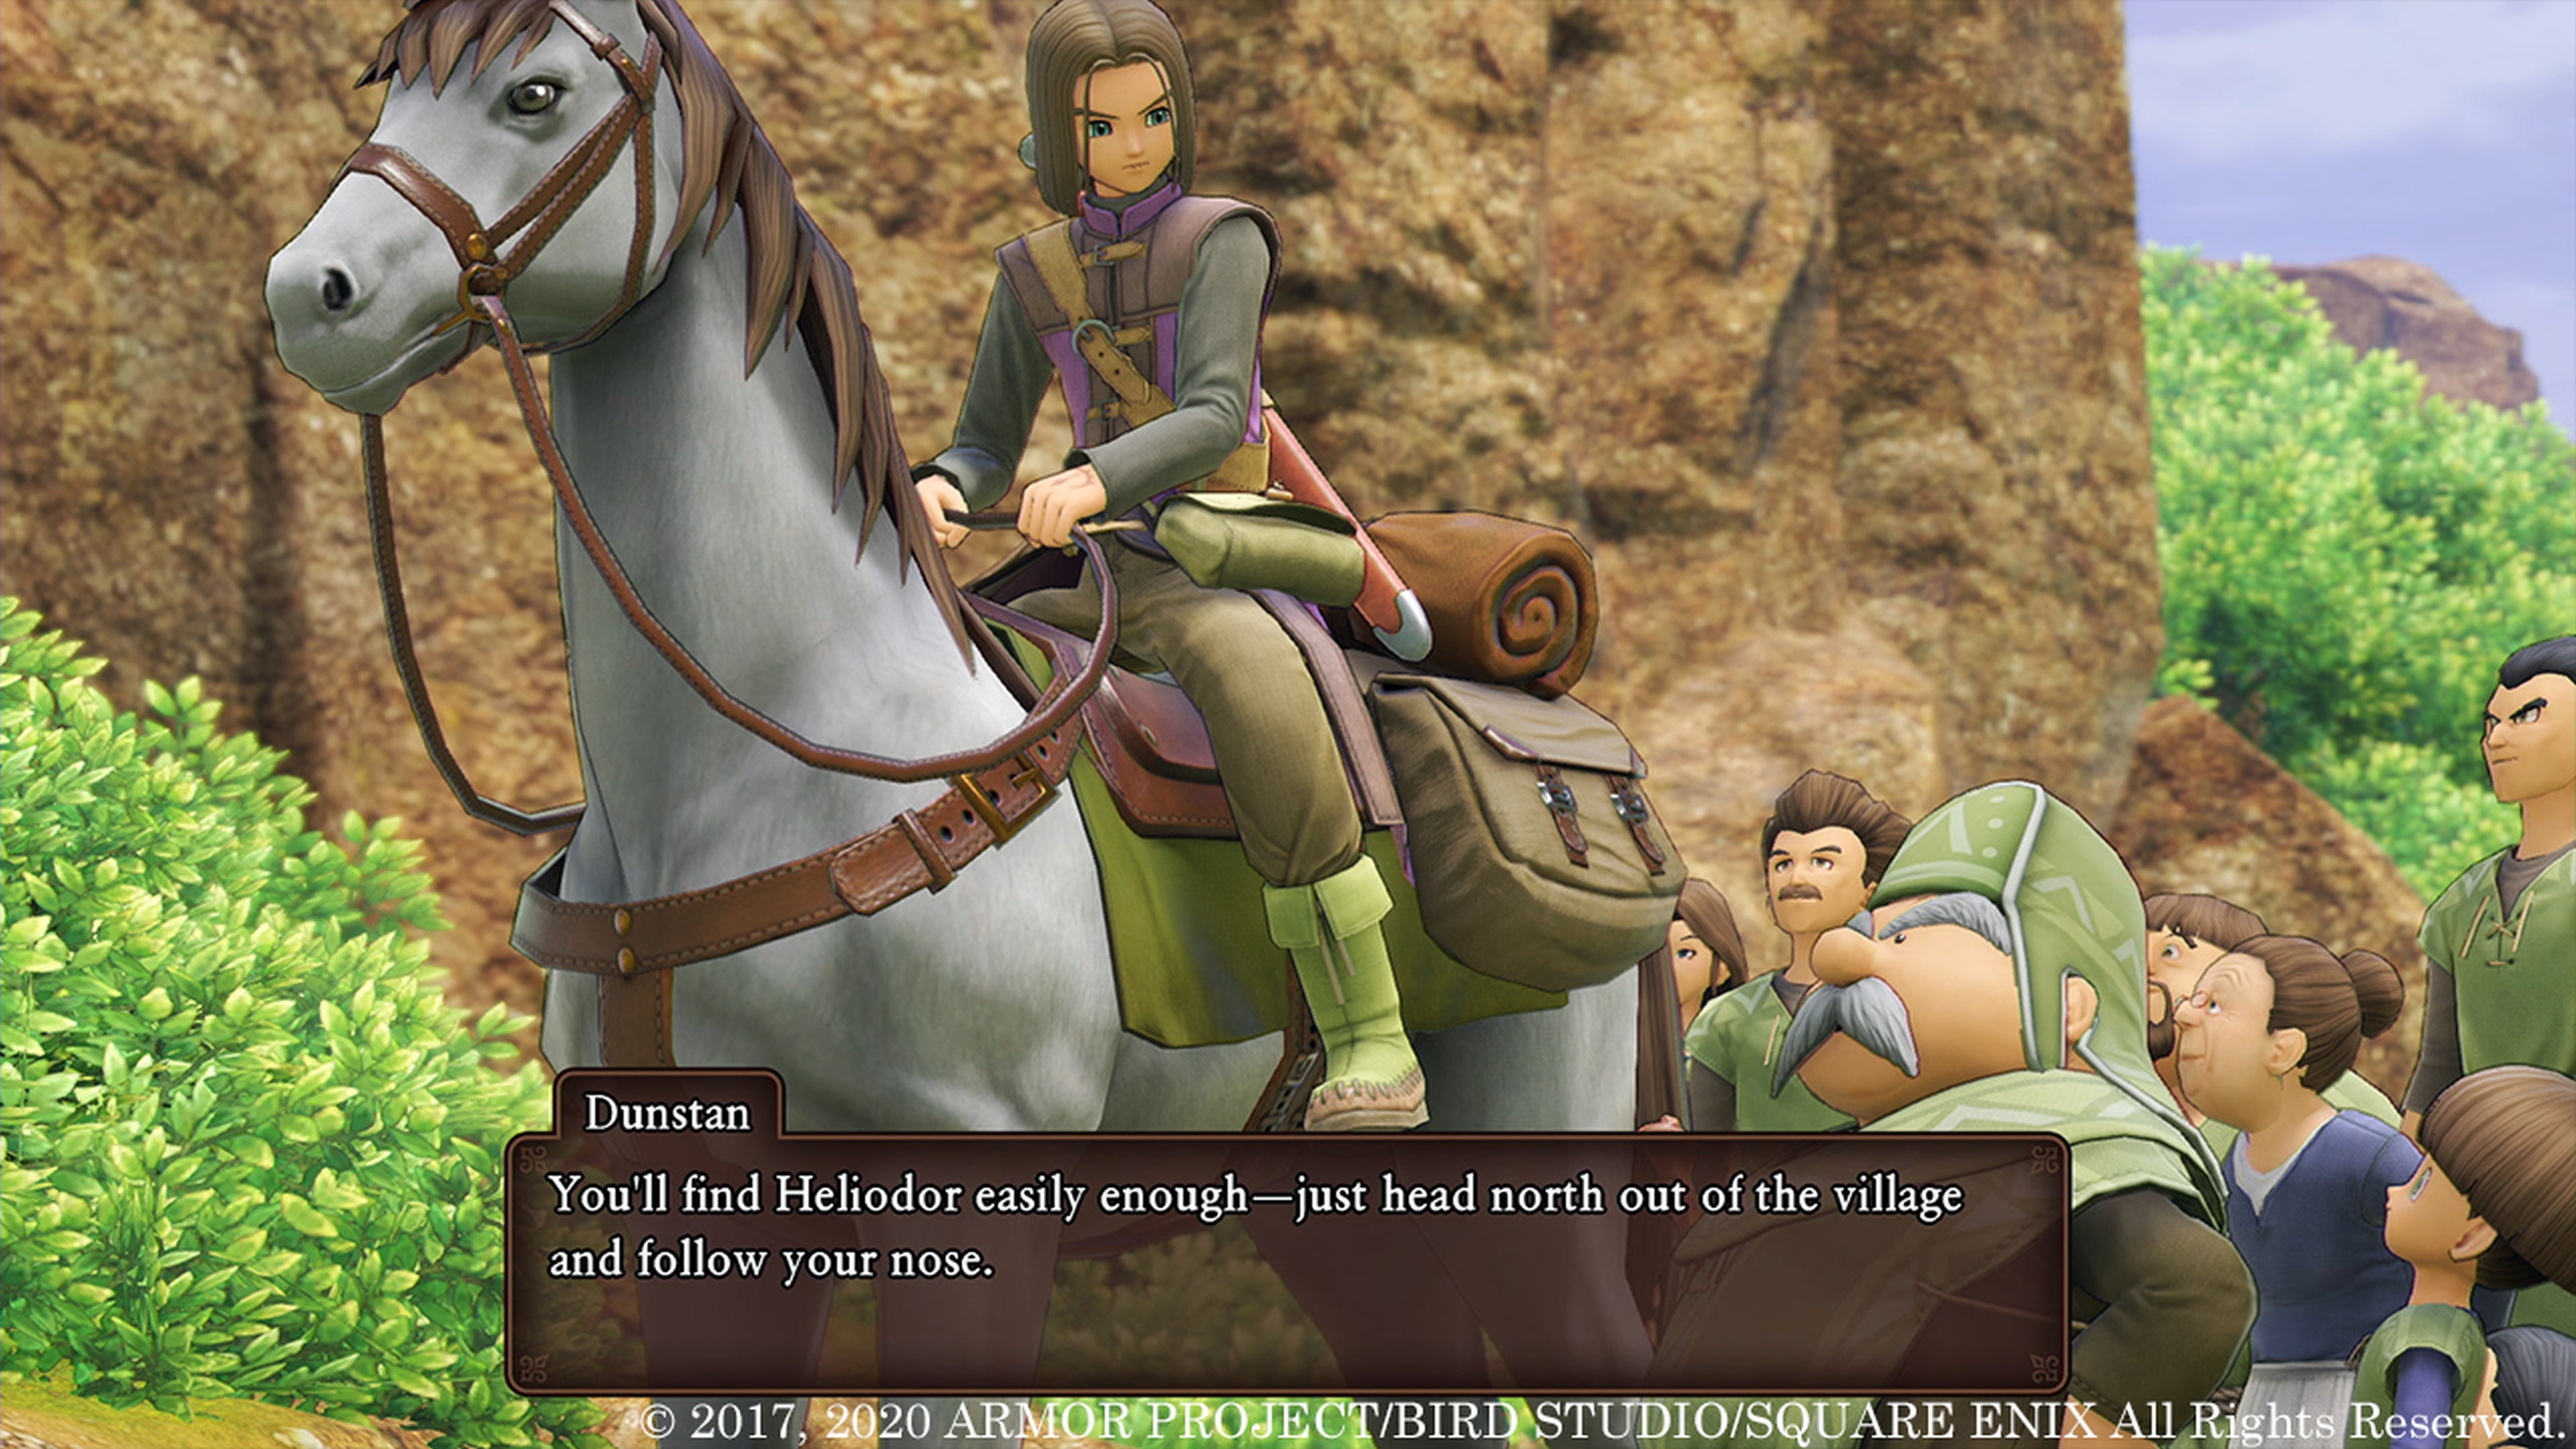 Baixe agora a demo de Dragon Quest XI S: Echoes of an Elusive Age